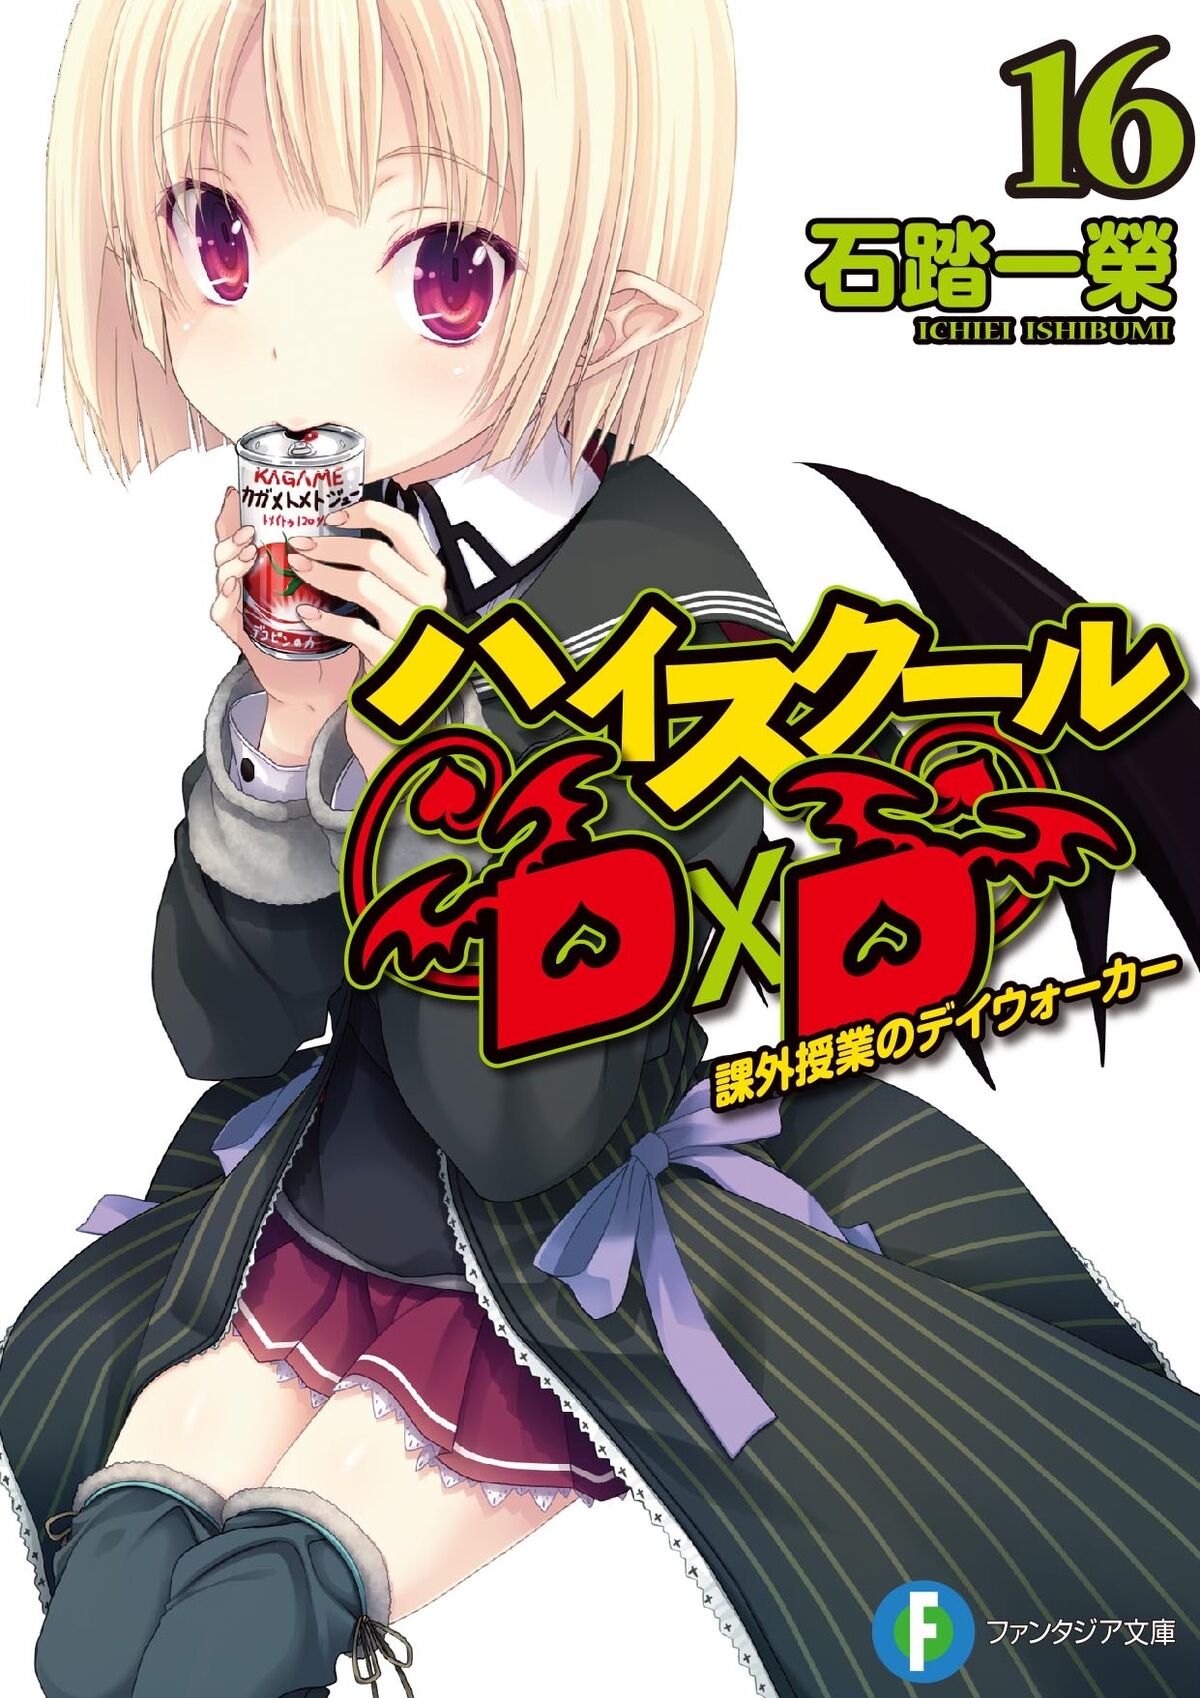 Light Novel Volume 16, High School DxD Wiki